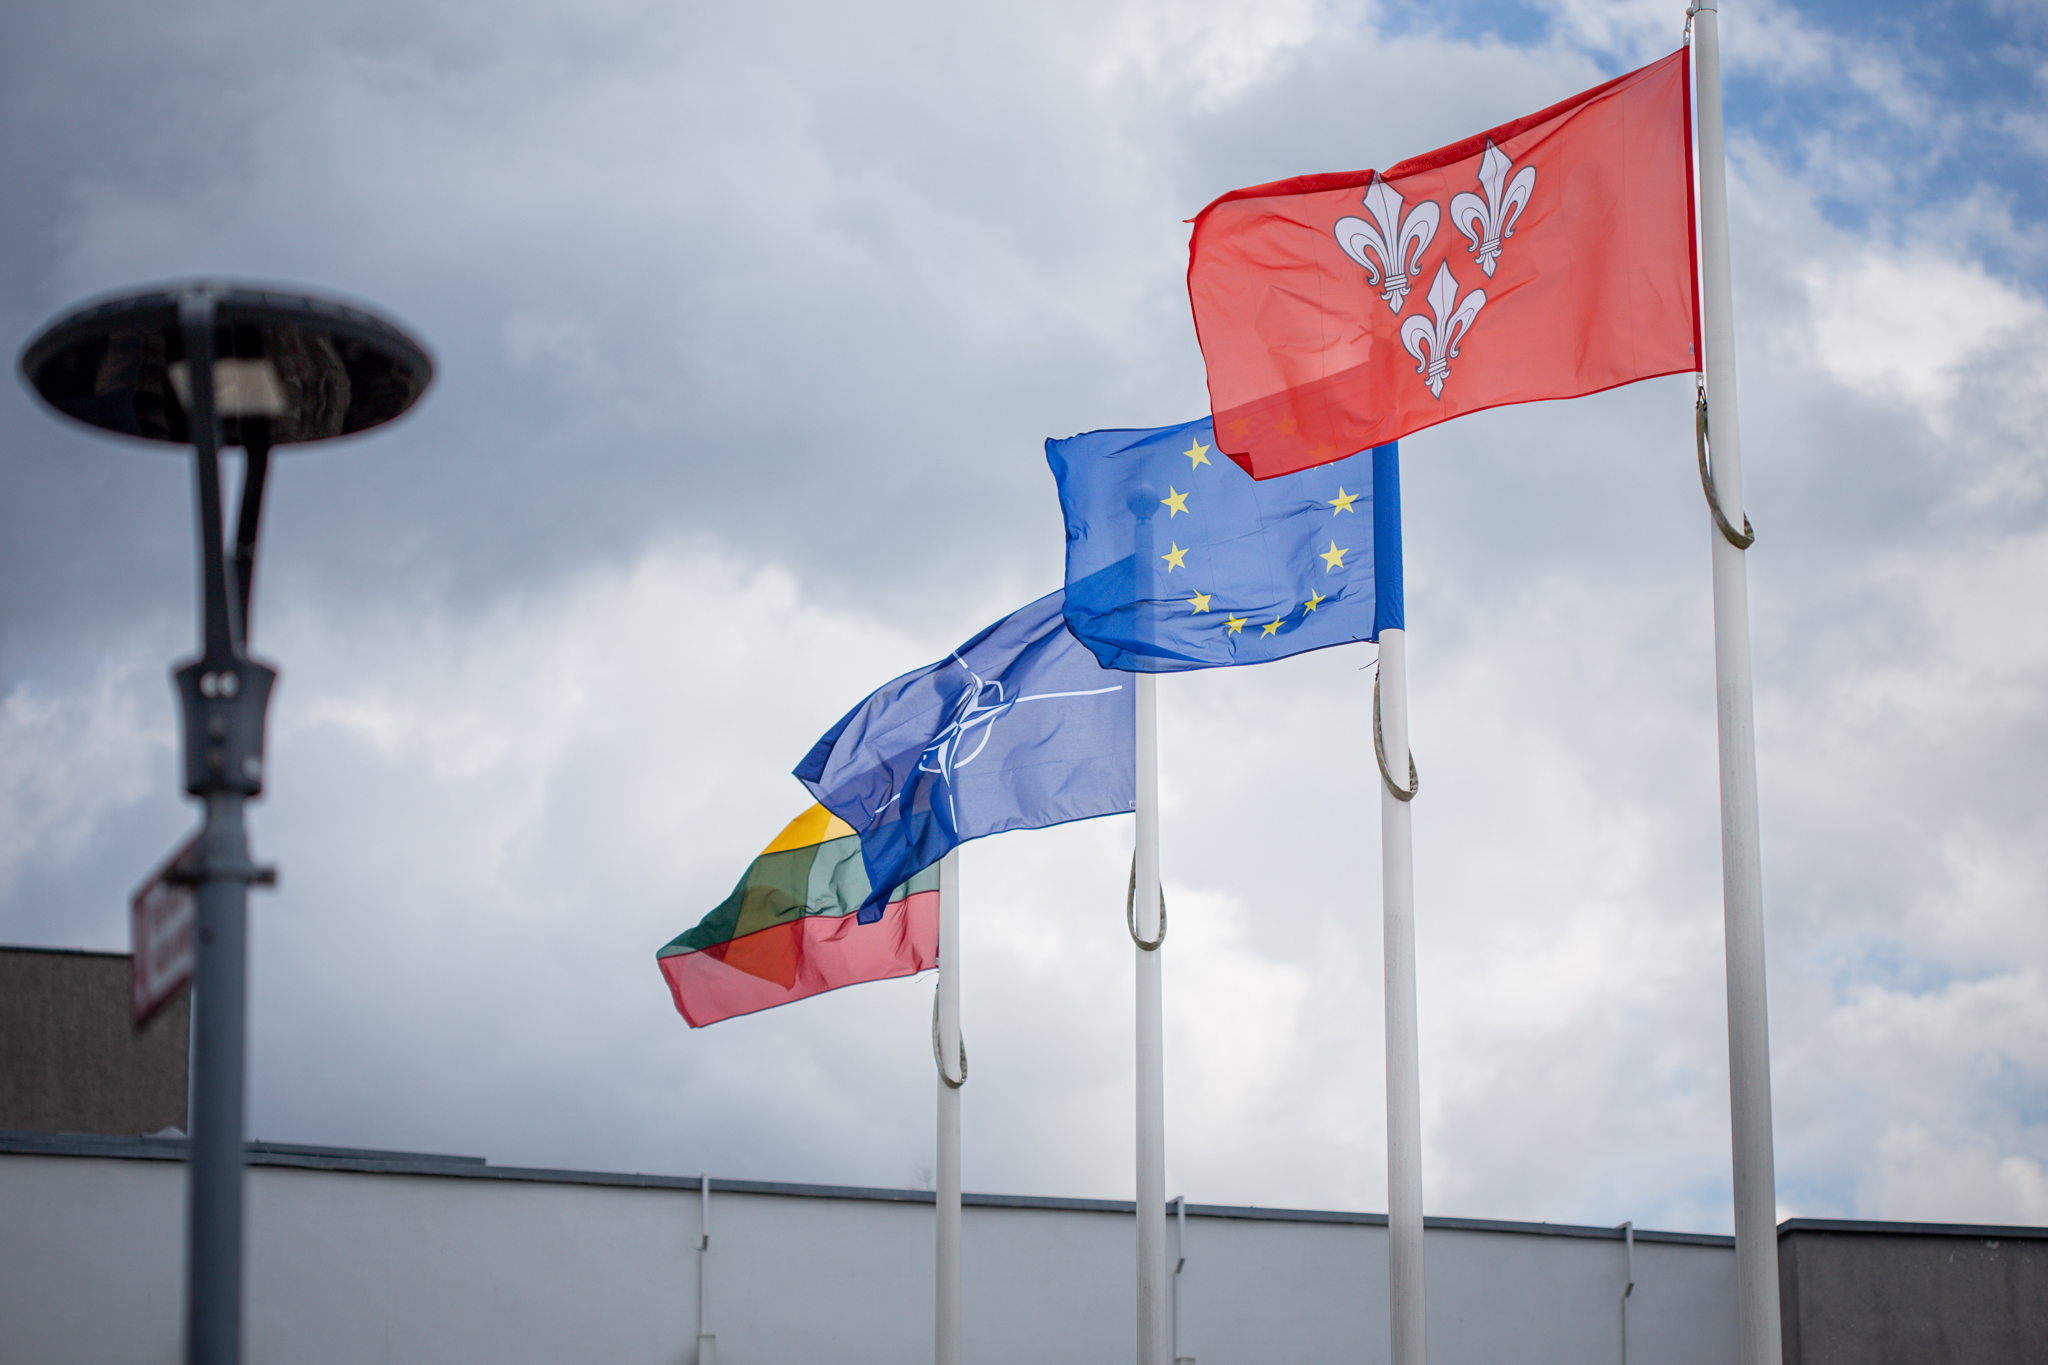 Šiemet pažymime iškilmingą 20-ies metų sukaktį nuo Lietuvos įstojimo į NATO.